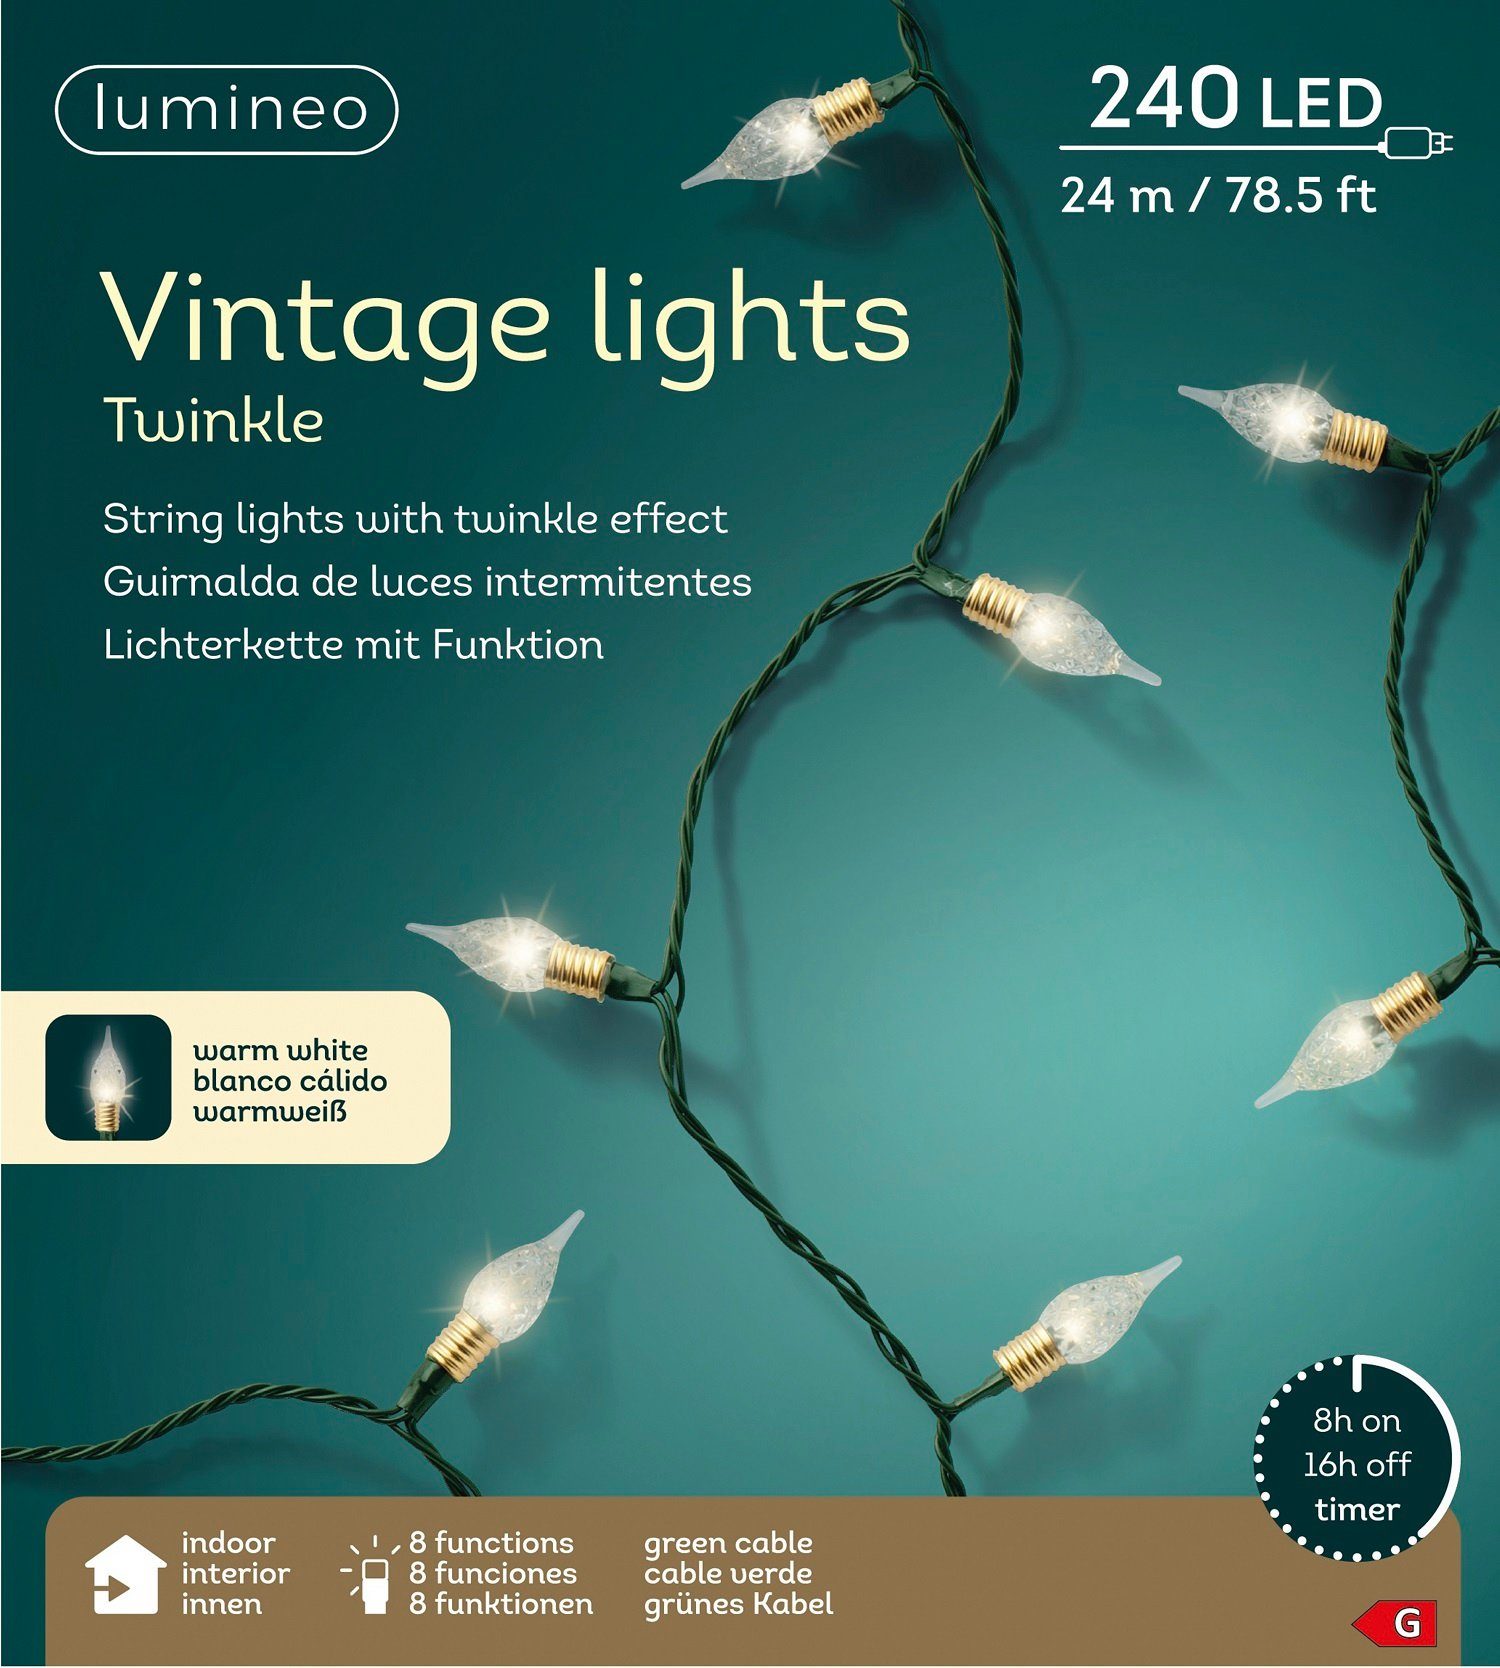 Lumineo LED-Lichterkette Lumineo Lichterkette Twinkle 240 LED 23,9 m warm weiß, 8 Funktionen, Twinkle-Effect, Indoor, 8h-Timer